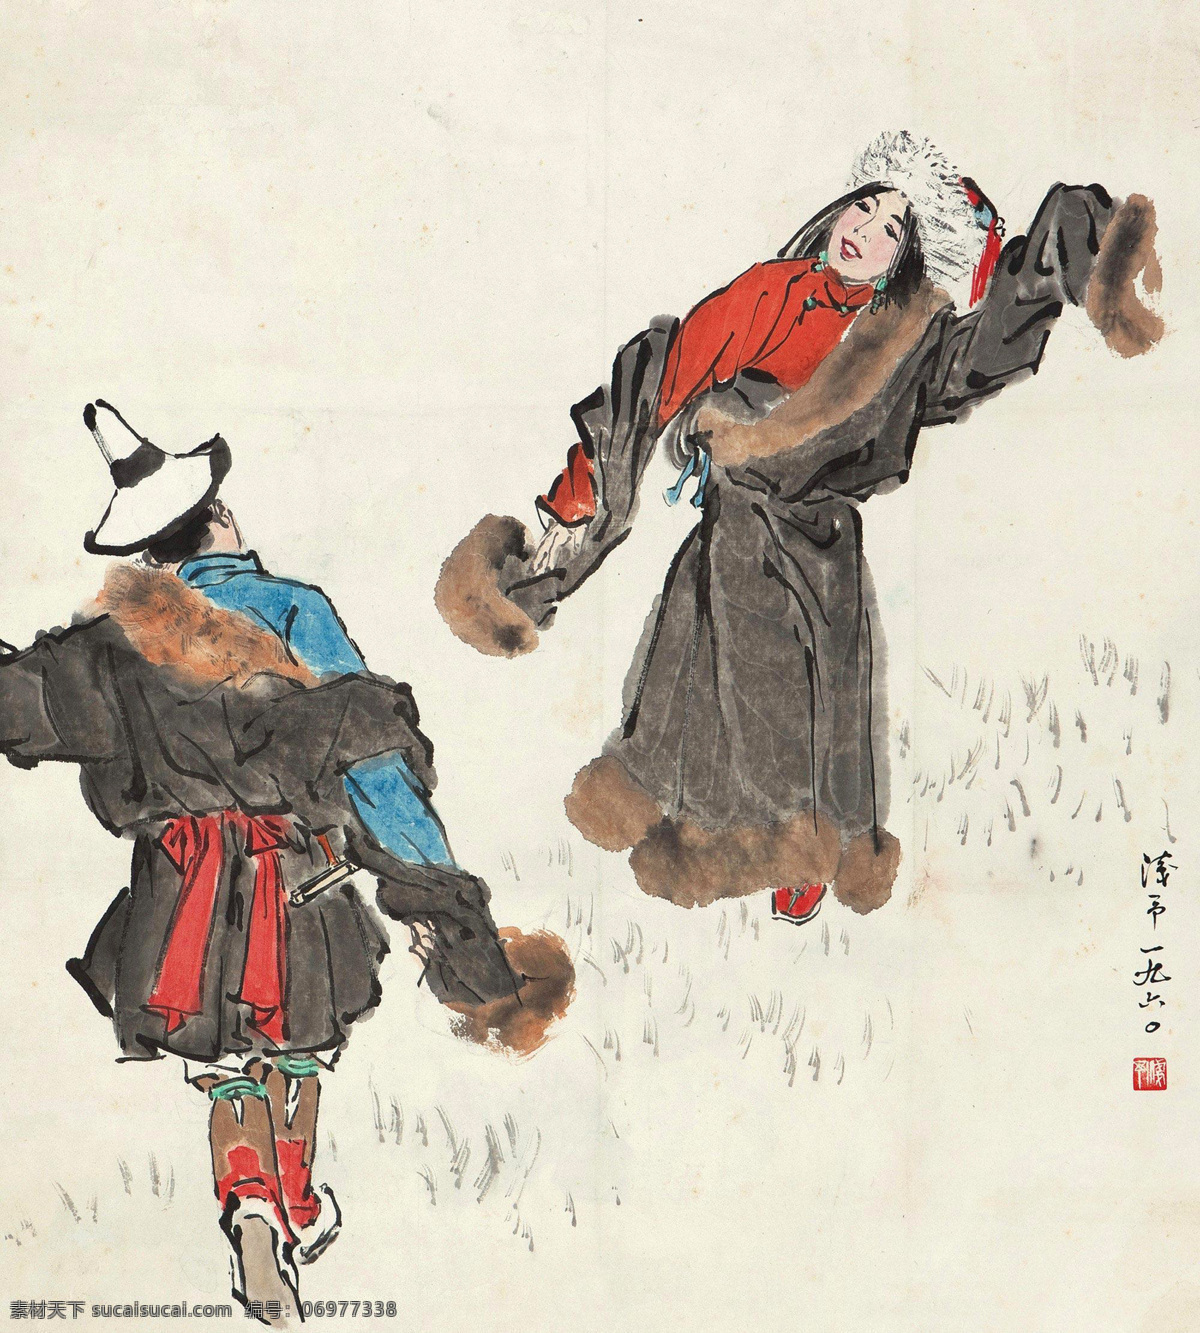 藏族 风情 国画 绘画书法 人物速写 速写 文化艺术 藏舞 叶浅予 藏族舞 民族舞蹈 舞蹈 民族风情 国画叶浅予 psd源文件